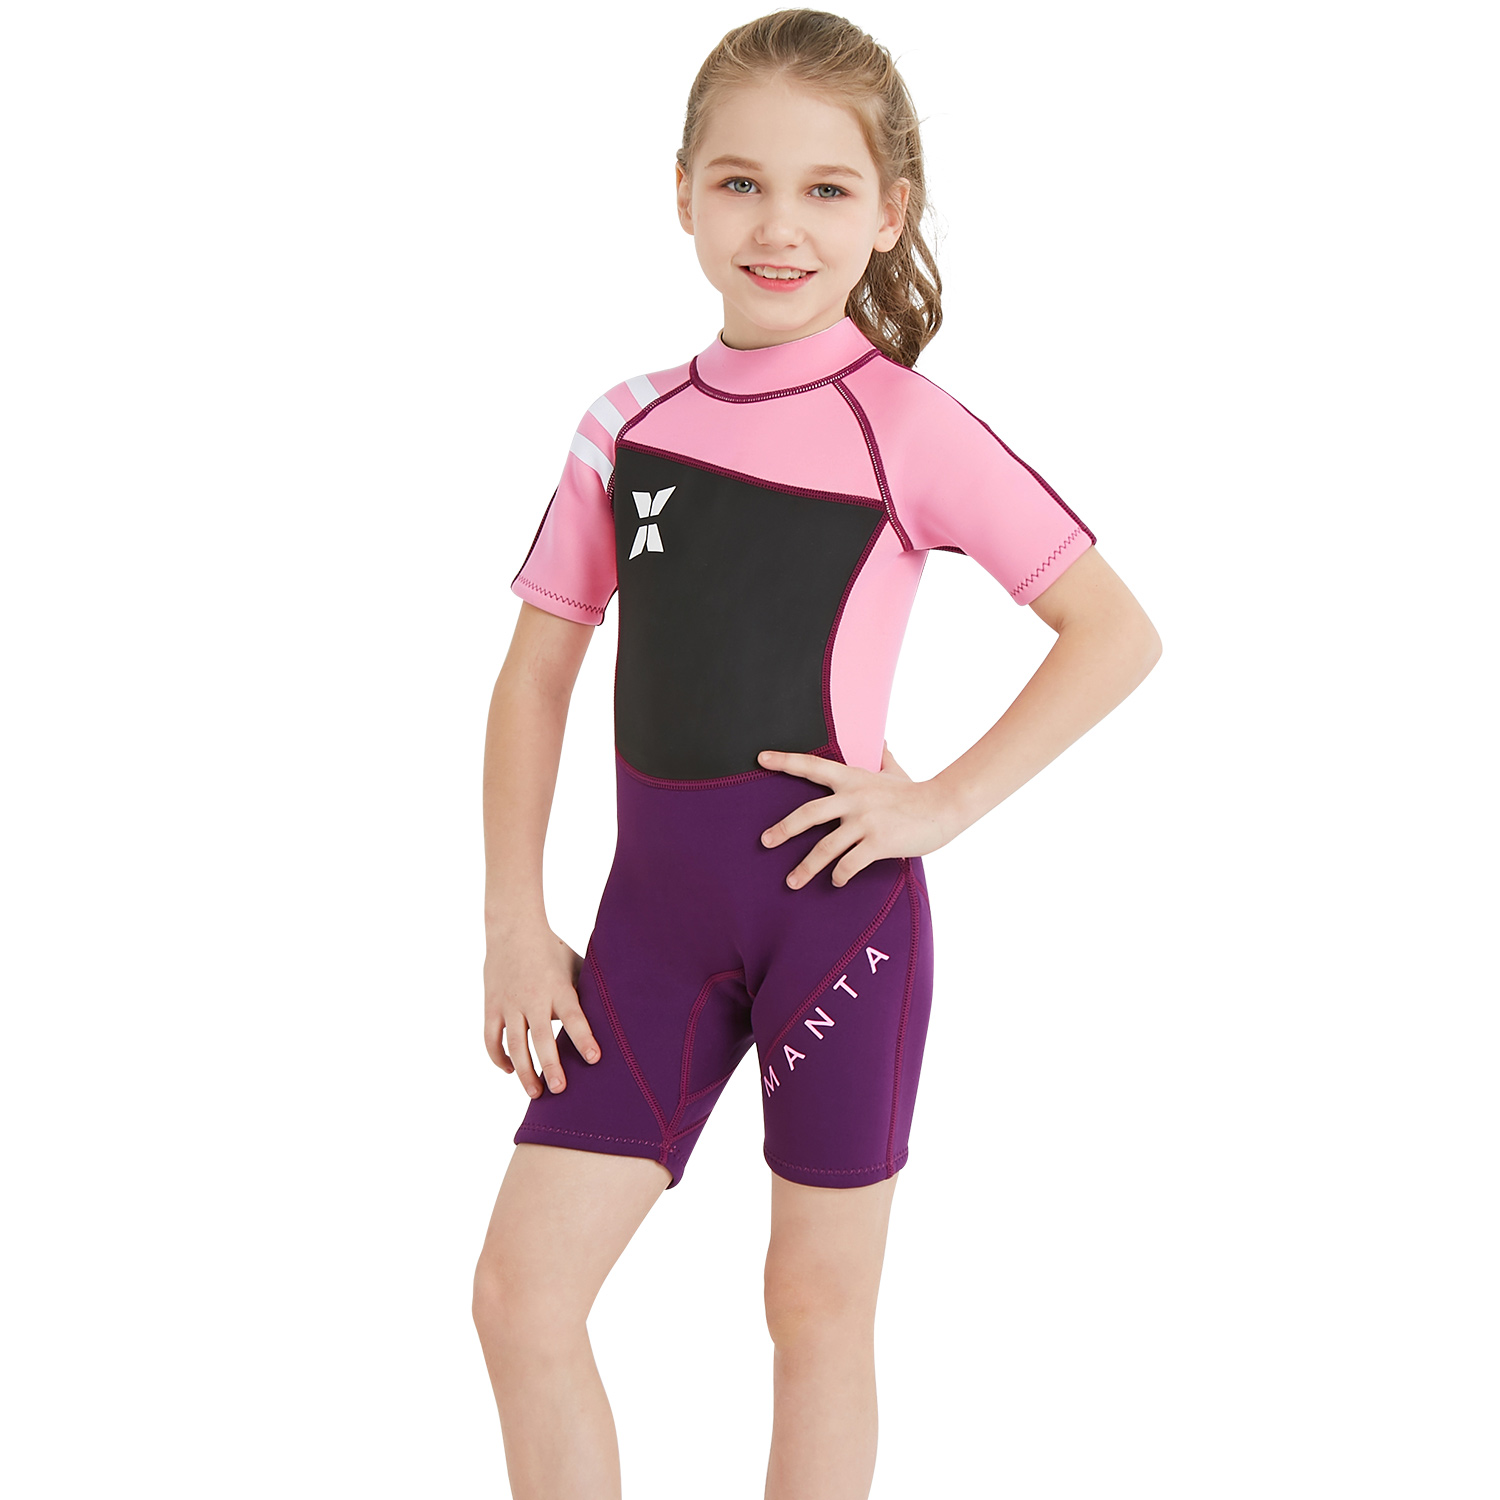 Irder - short sleeve good fabric girl children swimwear wetsuit for girl